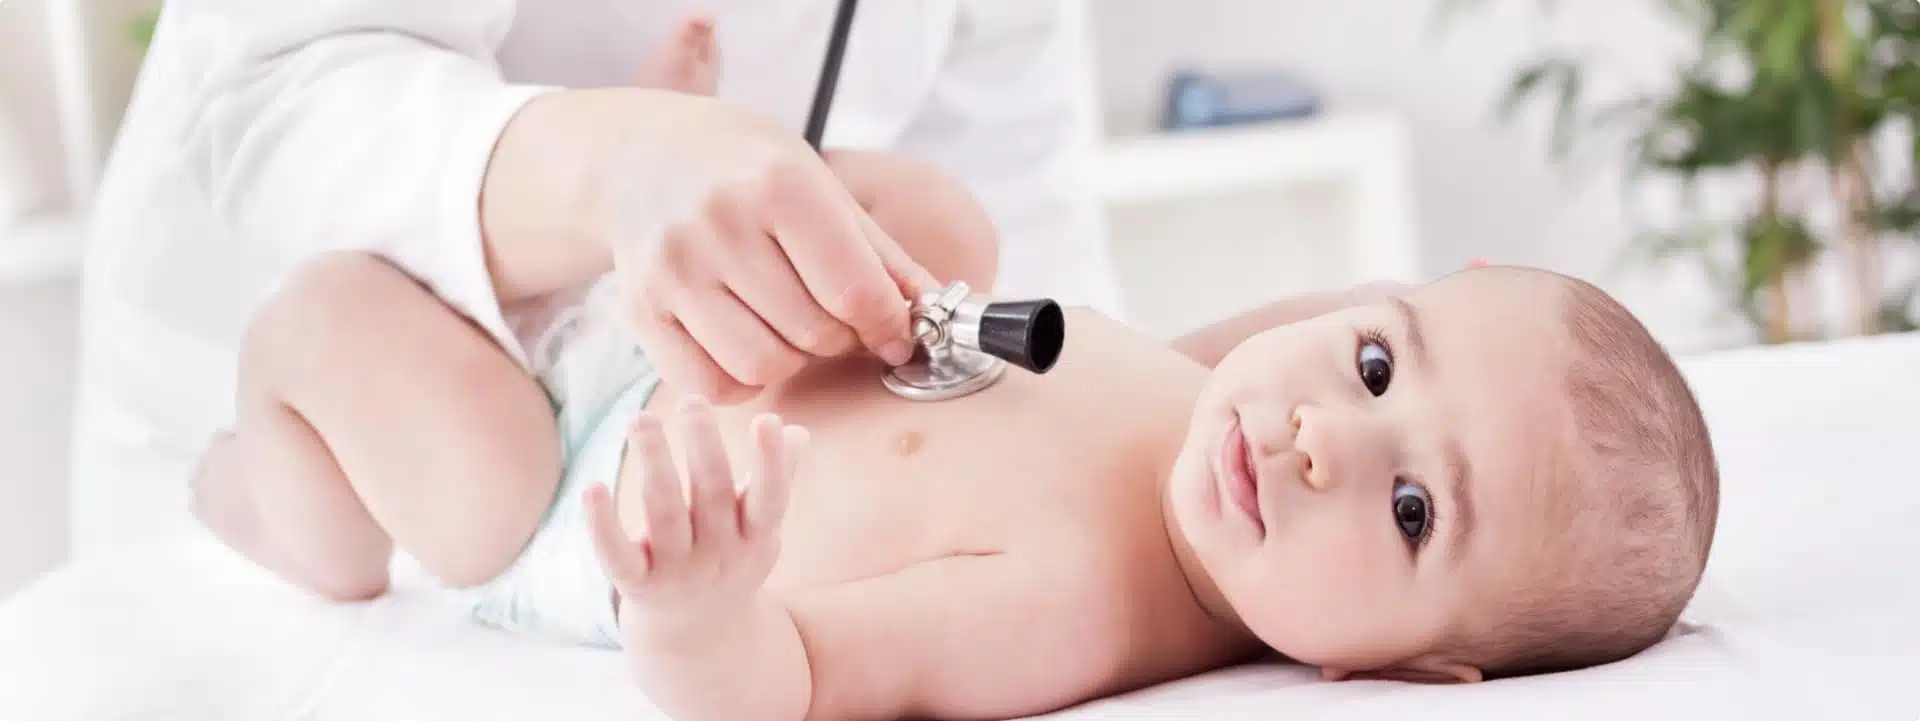 תינוק בבדיקת רופא